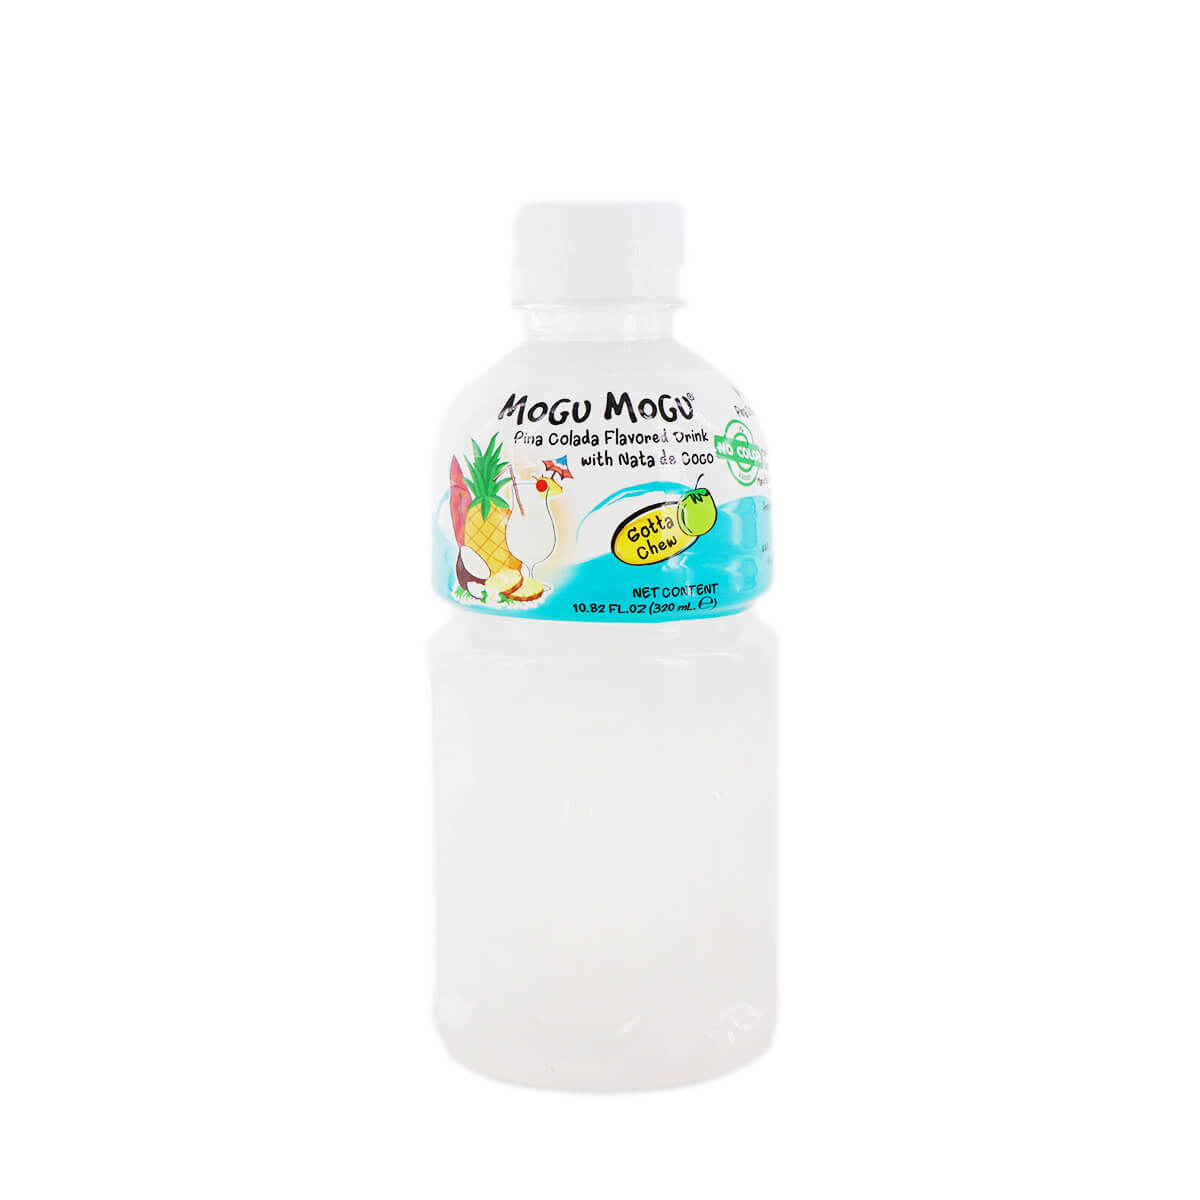 Mogu Mogu Pina Colada Drink With Nata De Coco 320ml H Mart Manhattan Delivery 9535